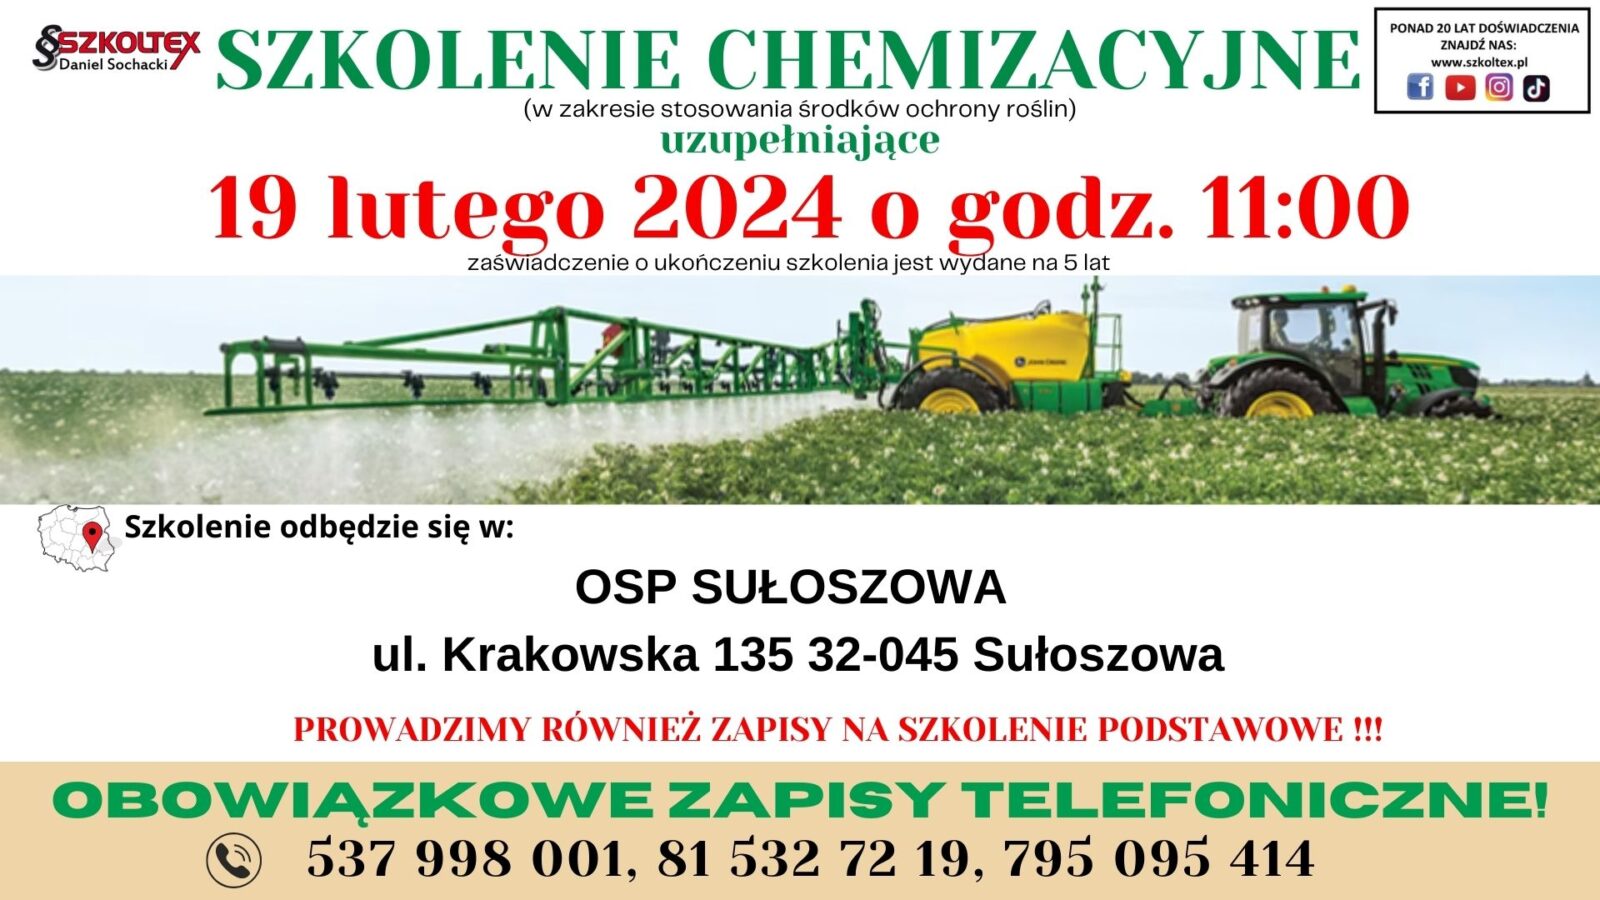 Reklama szkolenia chemizacyjnego w OSP Sułoszowa